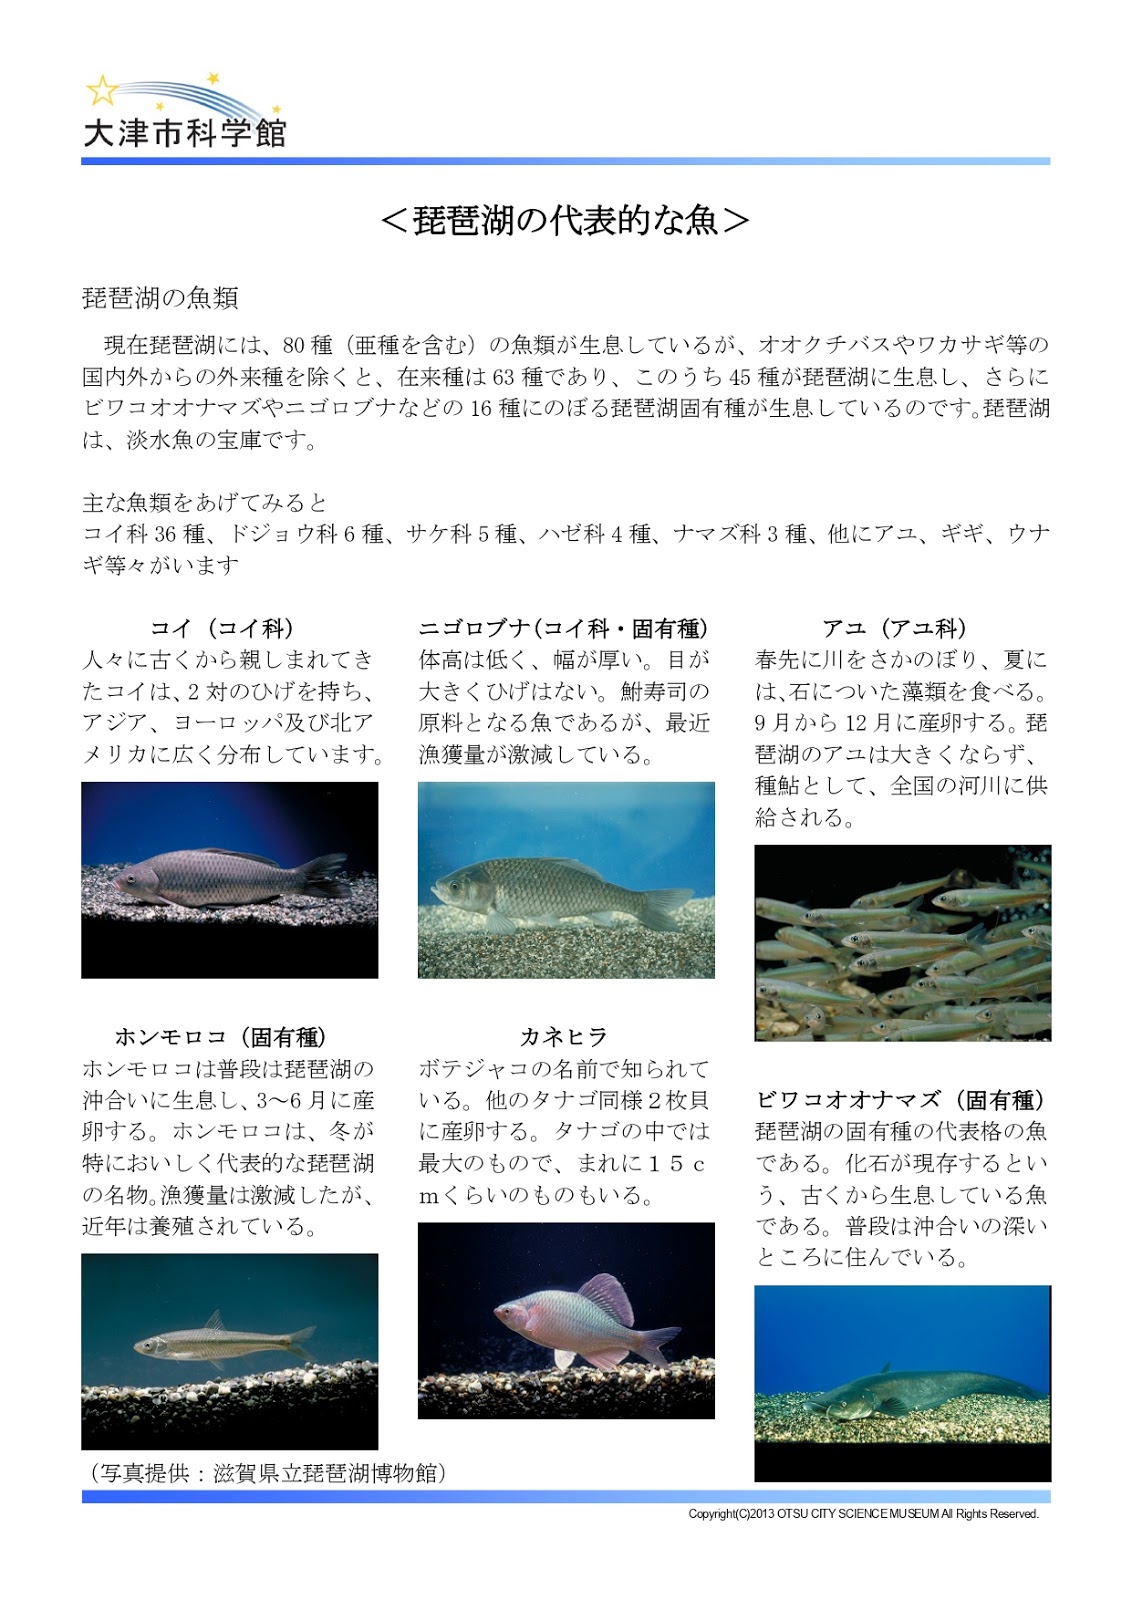 琵琶湖にいる魚の種類がなんと